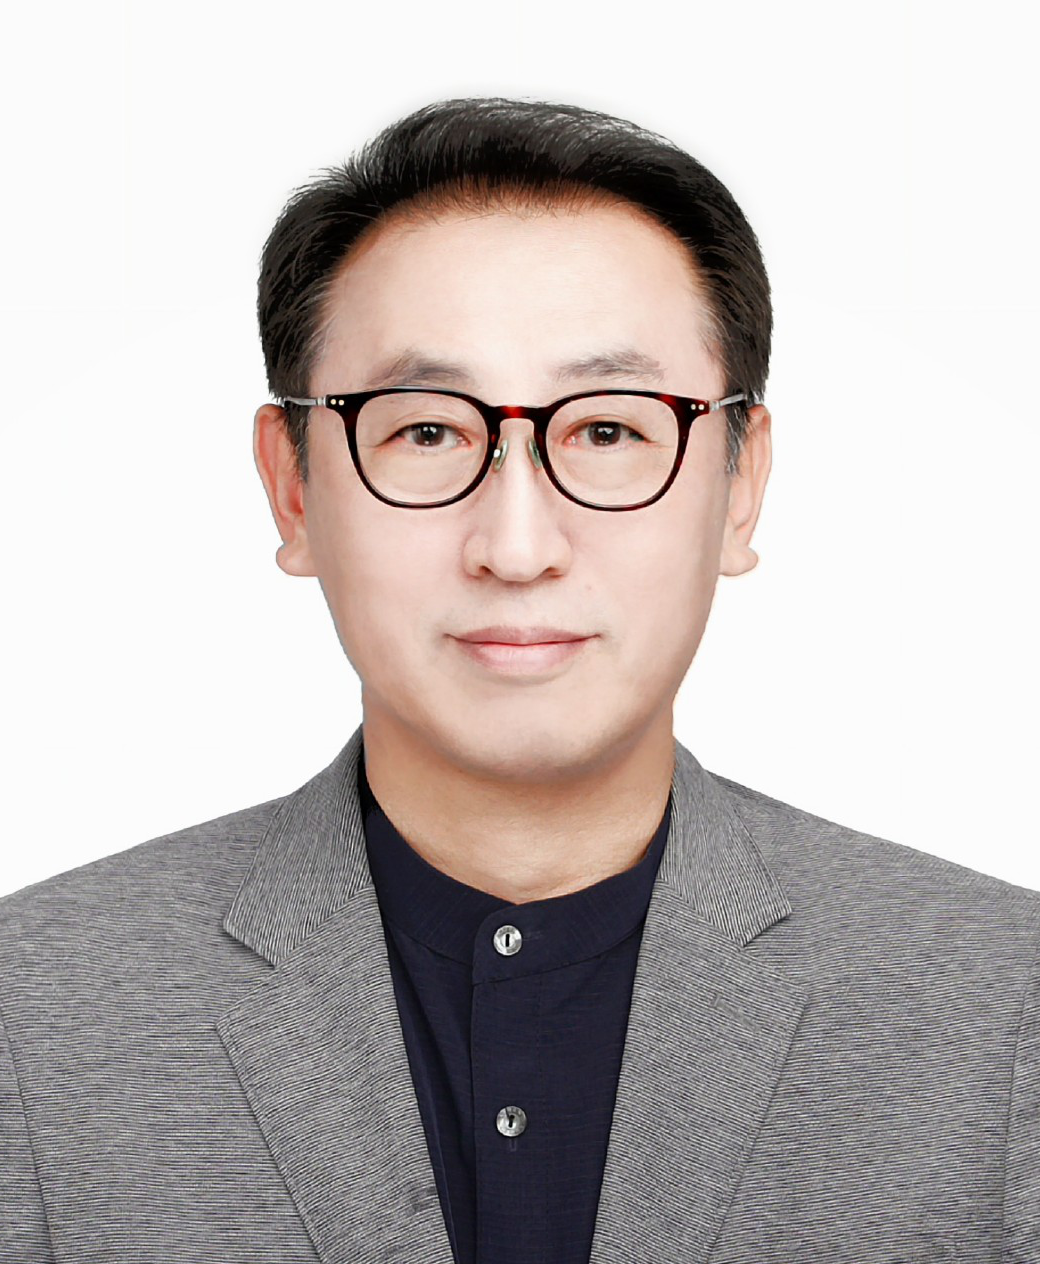 Mr. Soung Gon Kang